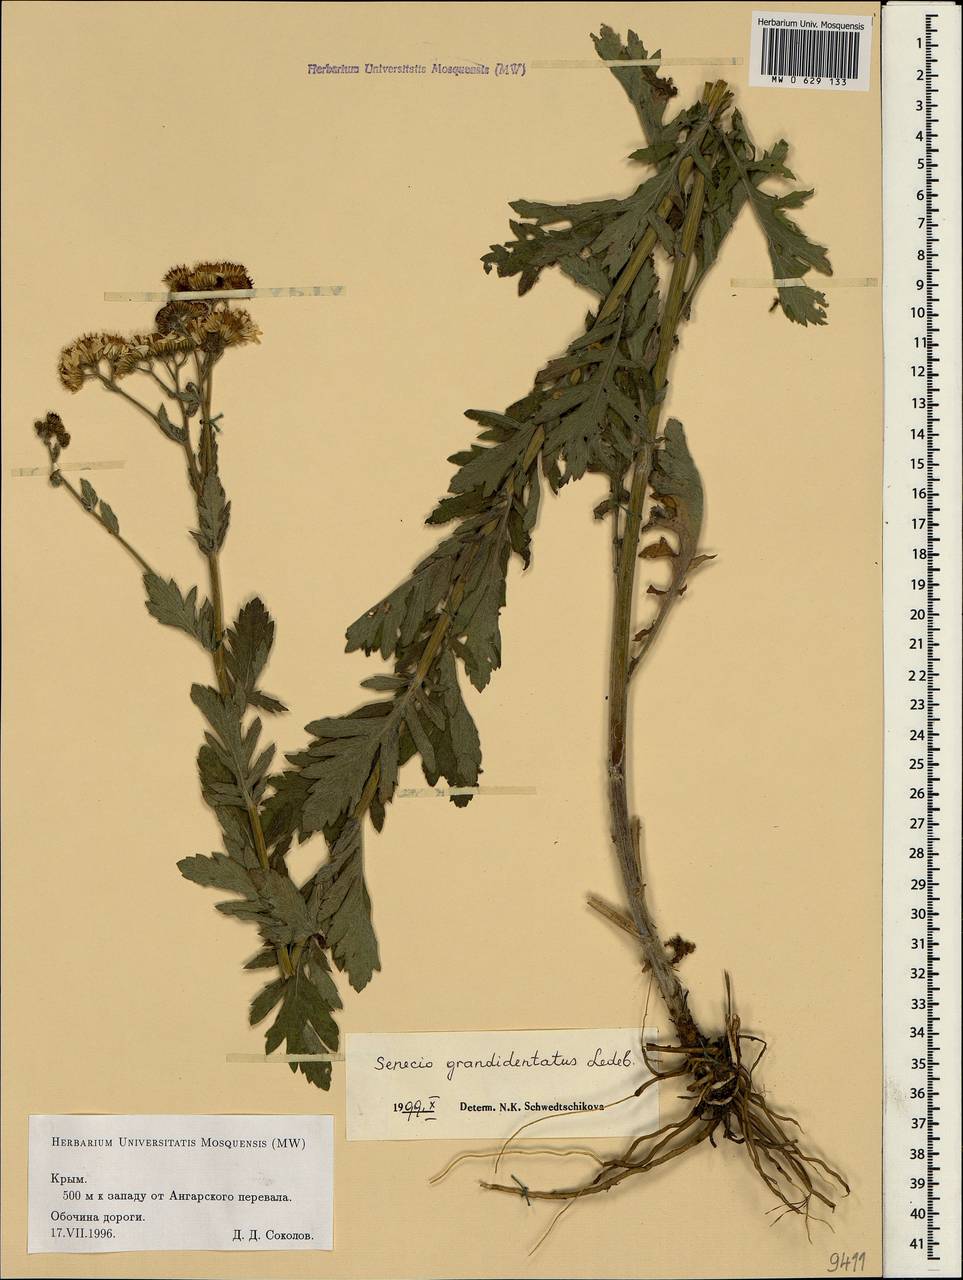 Jacobaea erucifolia subsp. grandidentata (Ledeb.) V. V. Fateryga & Fateryga, Crimea (KRYM) (Russia)